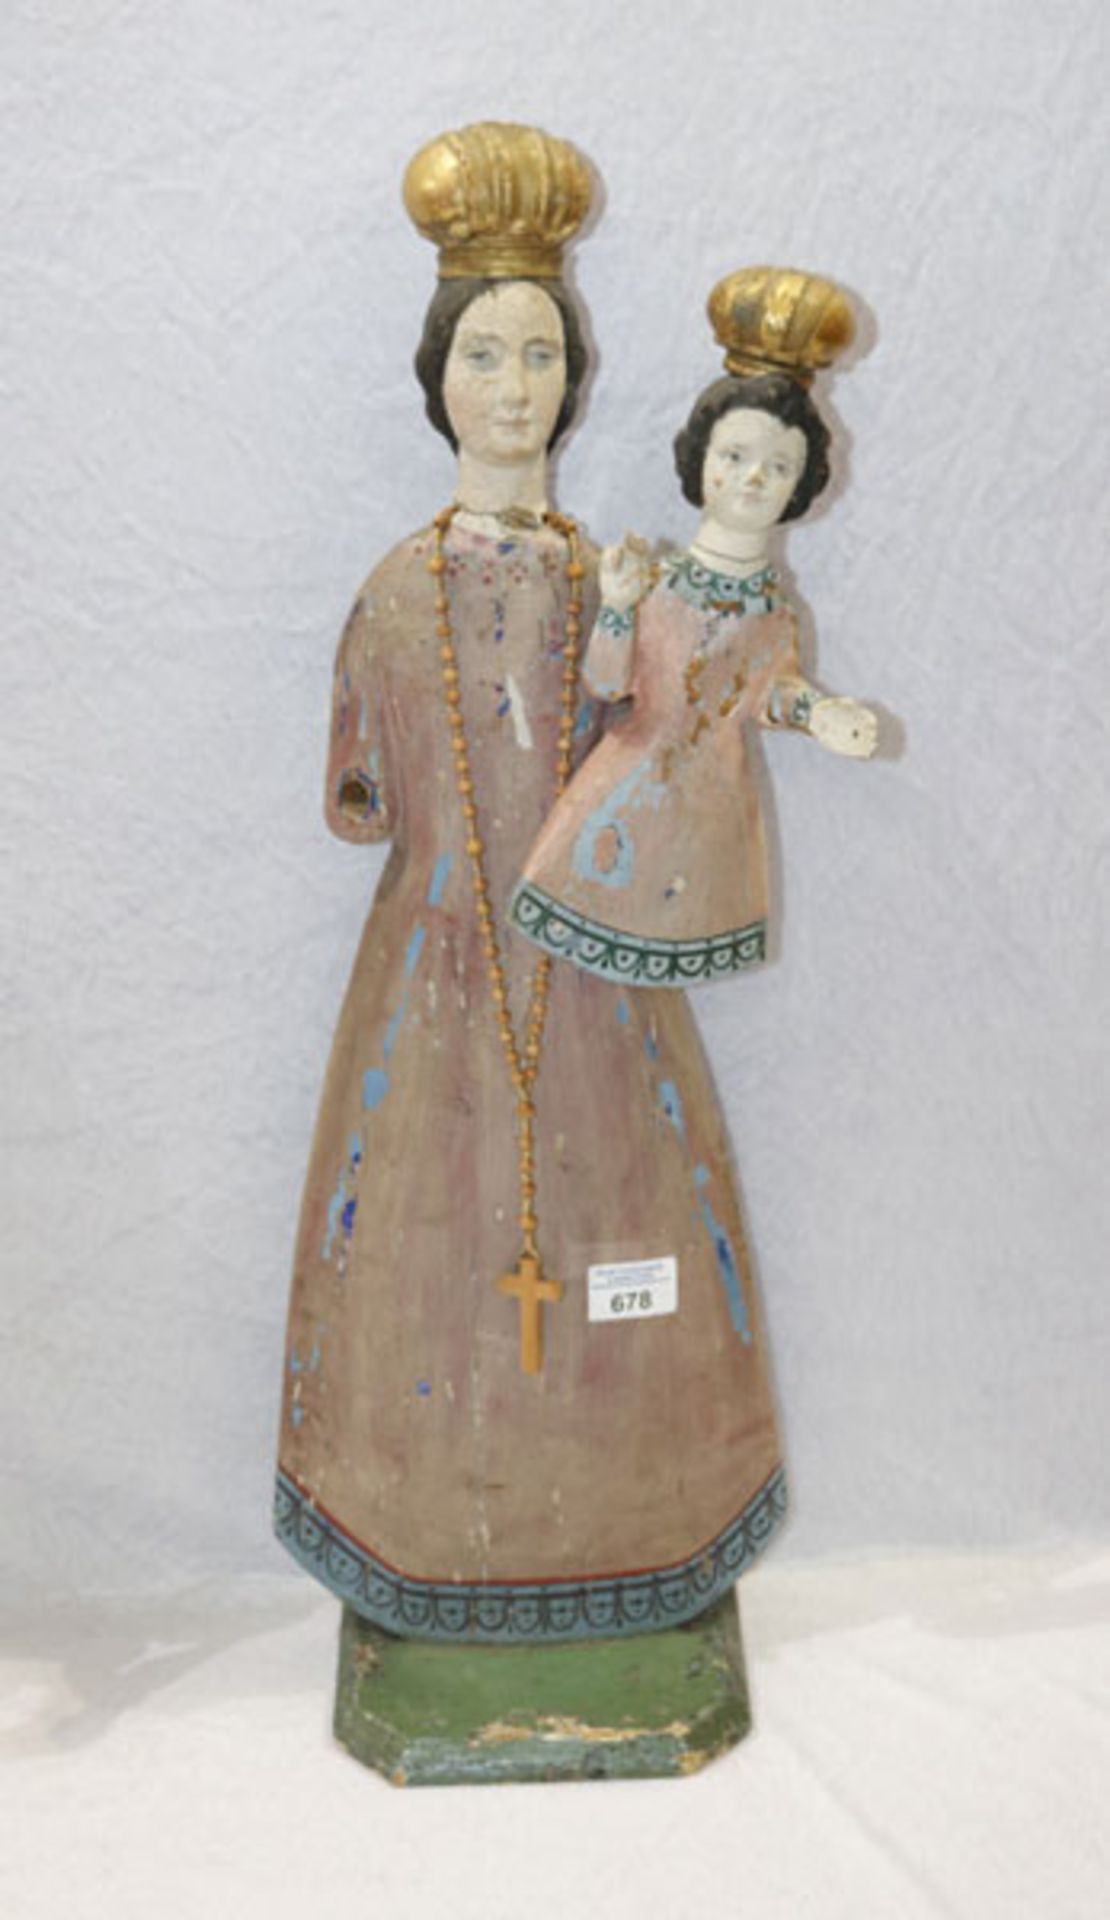 Holz Figurenskulptur 'Maria mit Kind', um 1900, farbig bemalt, ein Arm fehlt, beschädigt und